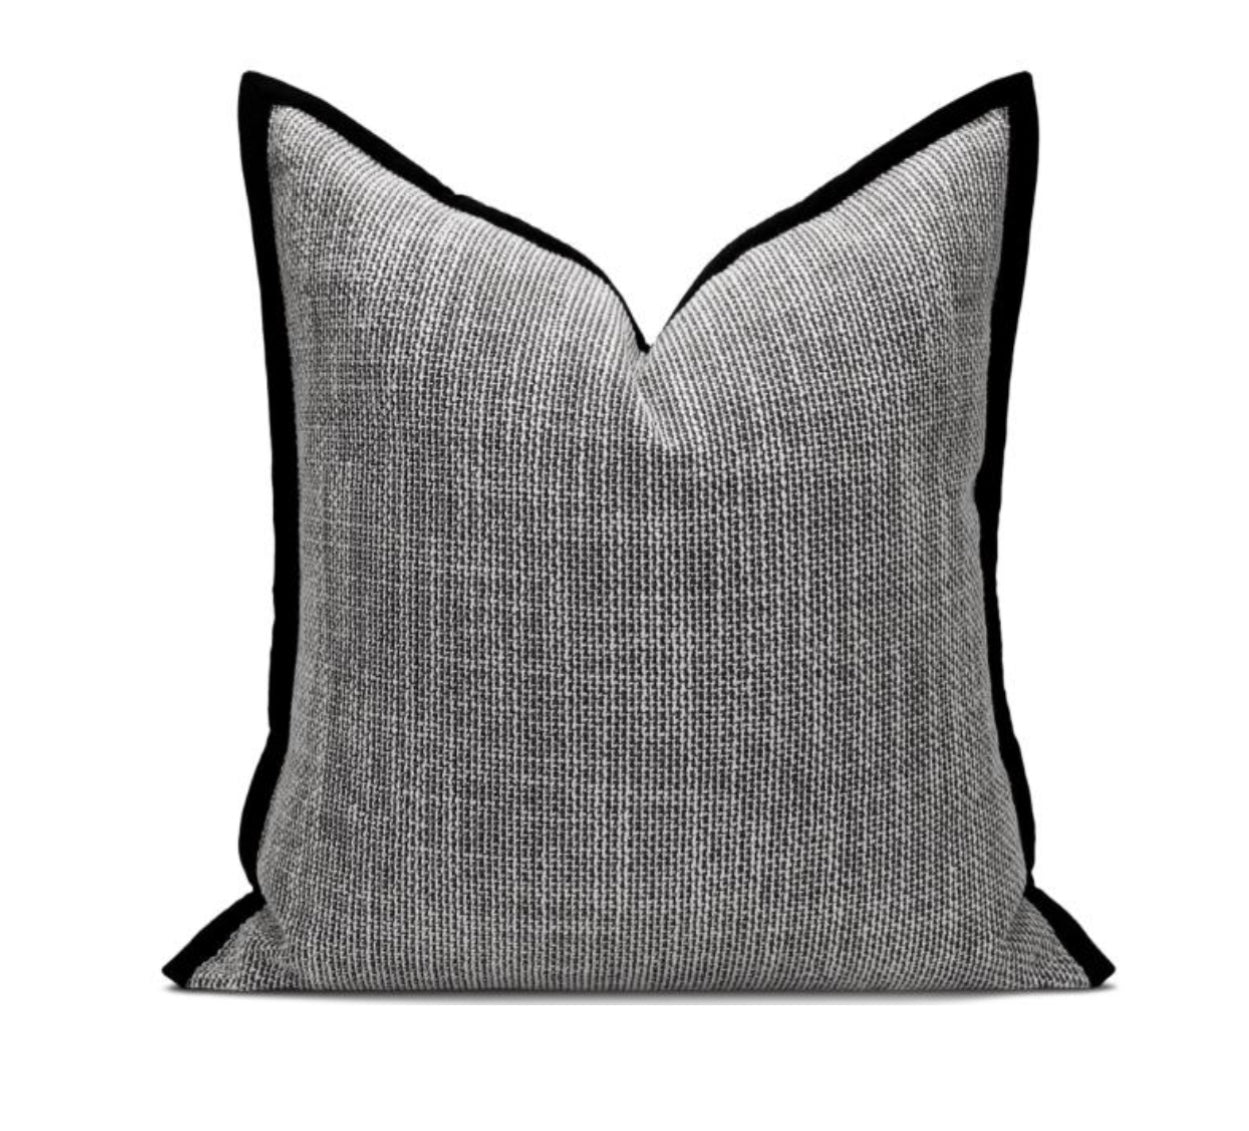 24” x 24” Luxury Cushions